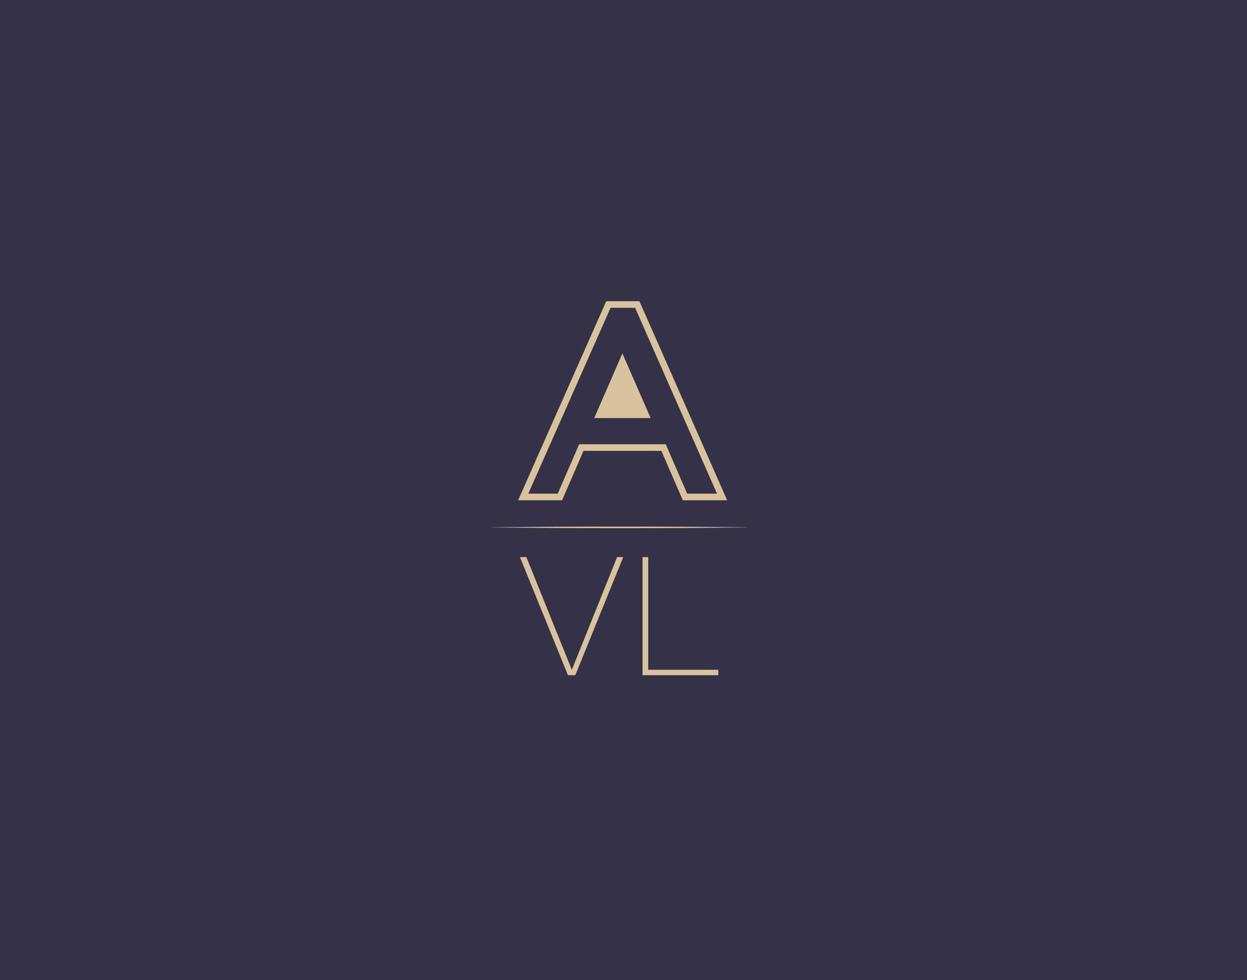 avl letter logo design imagens vetoriais minimalistas modernas vetor